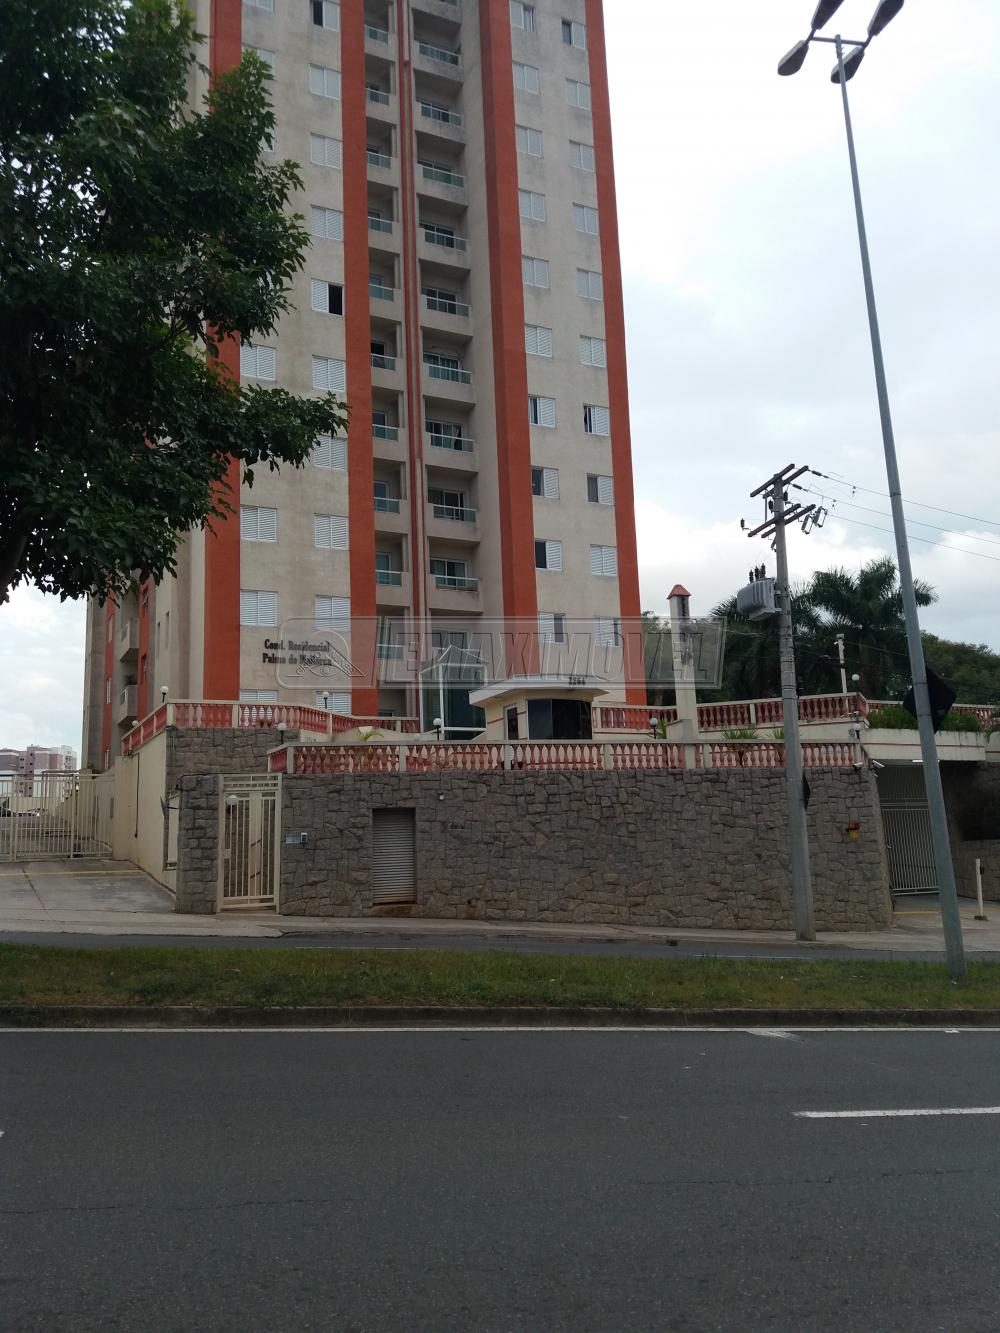 Alugar Apartamento / Padrão em Sorocaba R$ 1.100,00 - Foto 1